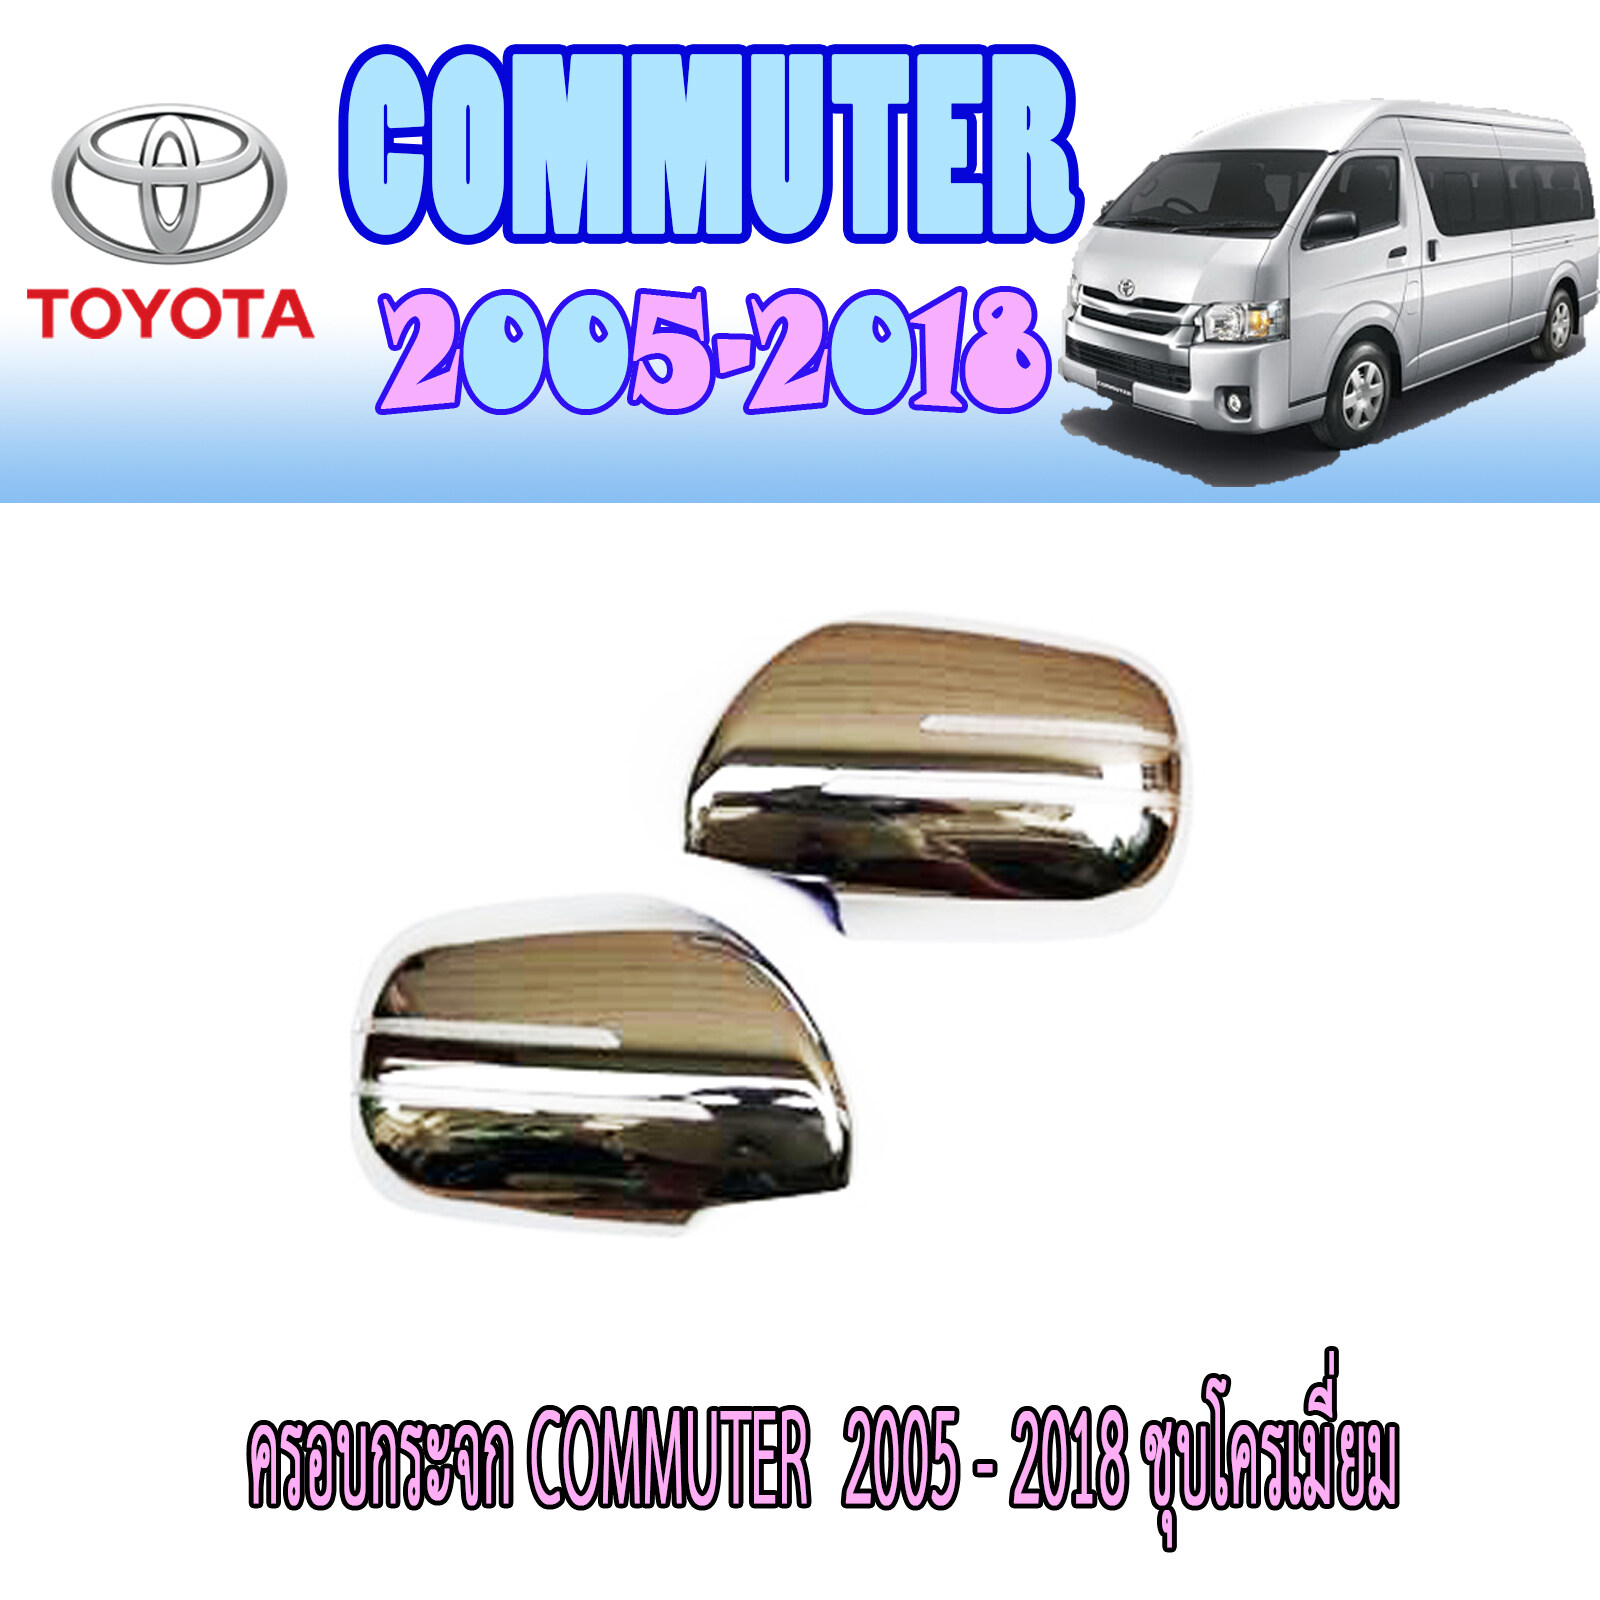 ครอบกระจก  โตโยต้า คอมมิวเตอร์ Toyota COMMUTER  2008-2018 ชุบโครเมี่ยม